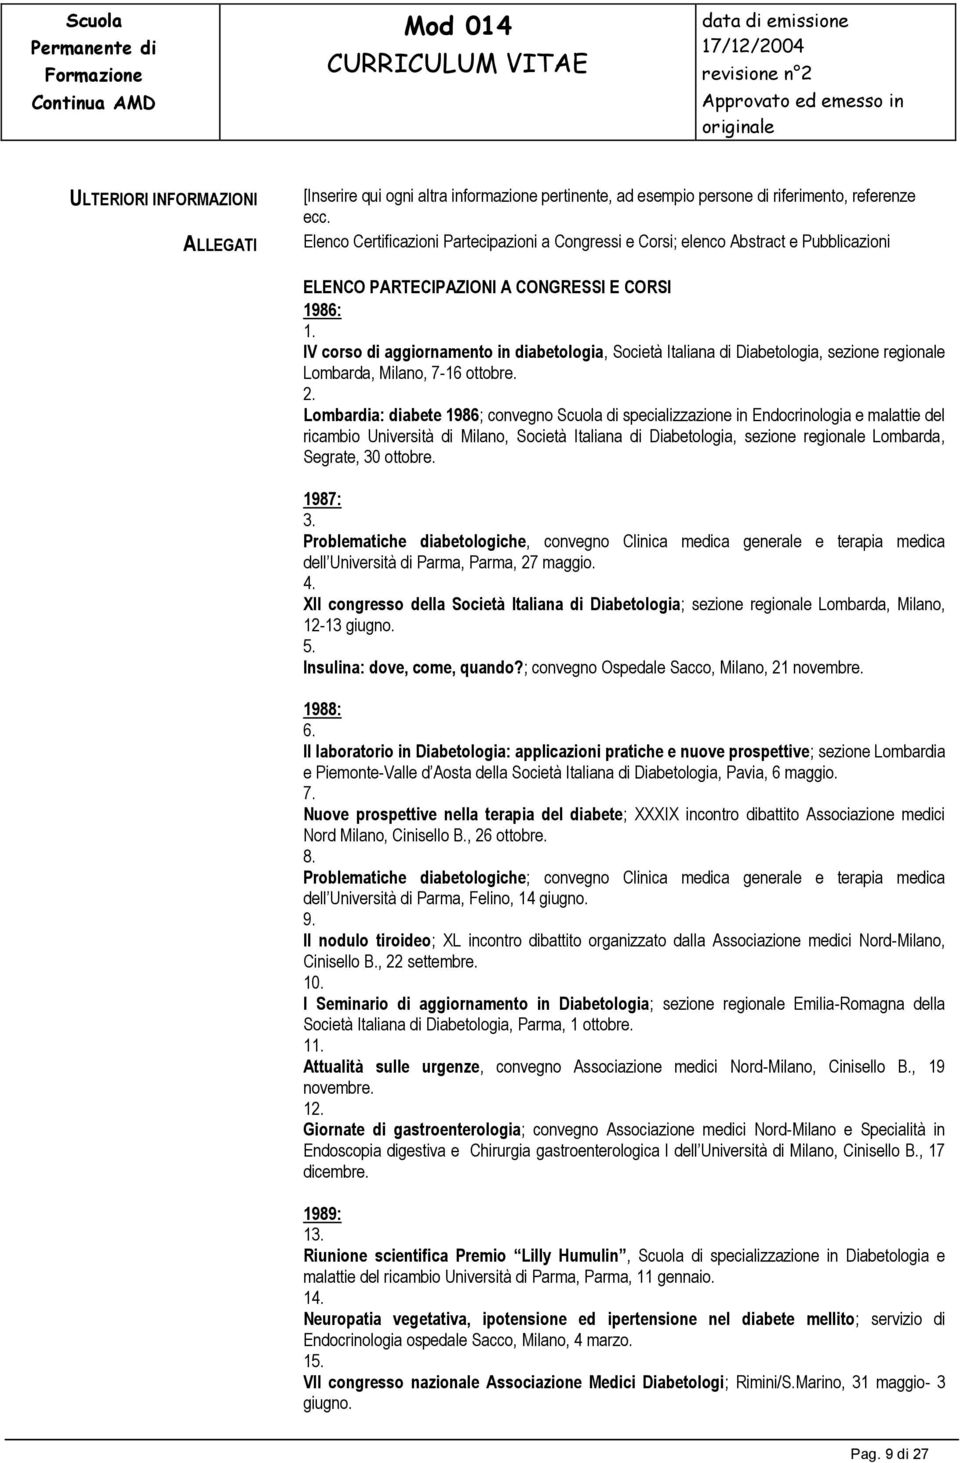 IV corso di aggiornamento in diabetologia, Società Italiana di Diabetologia, sezione regionale Lombarda, Milano, 7-16 ottobre. 2.